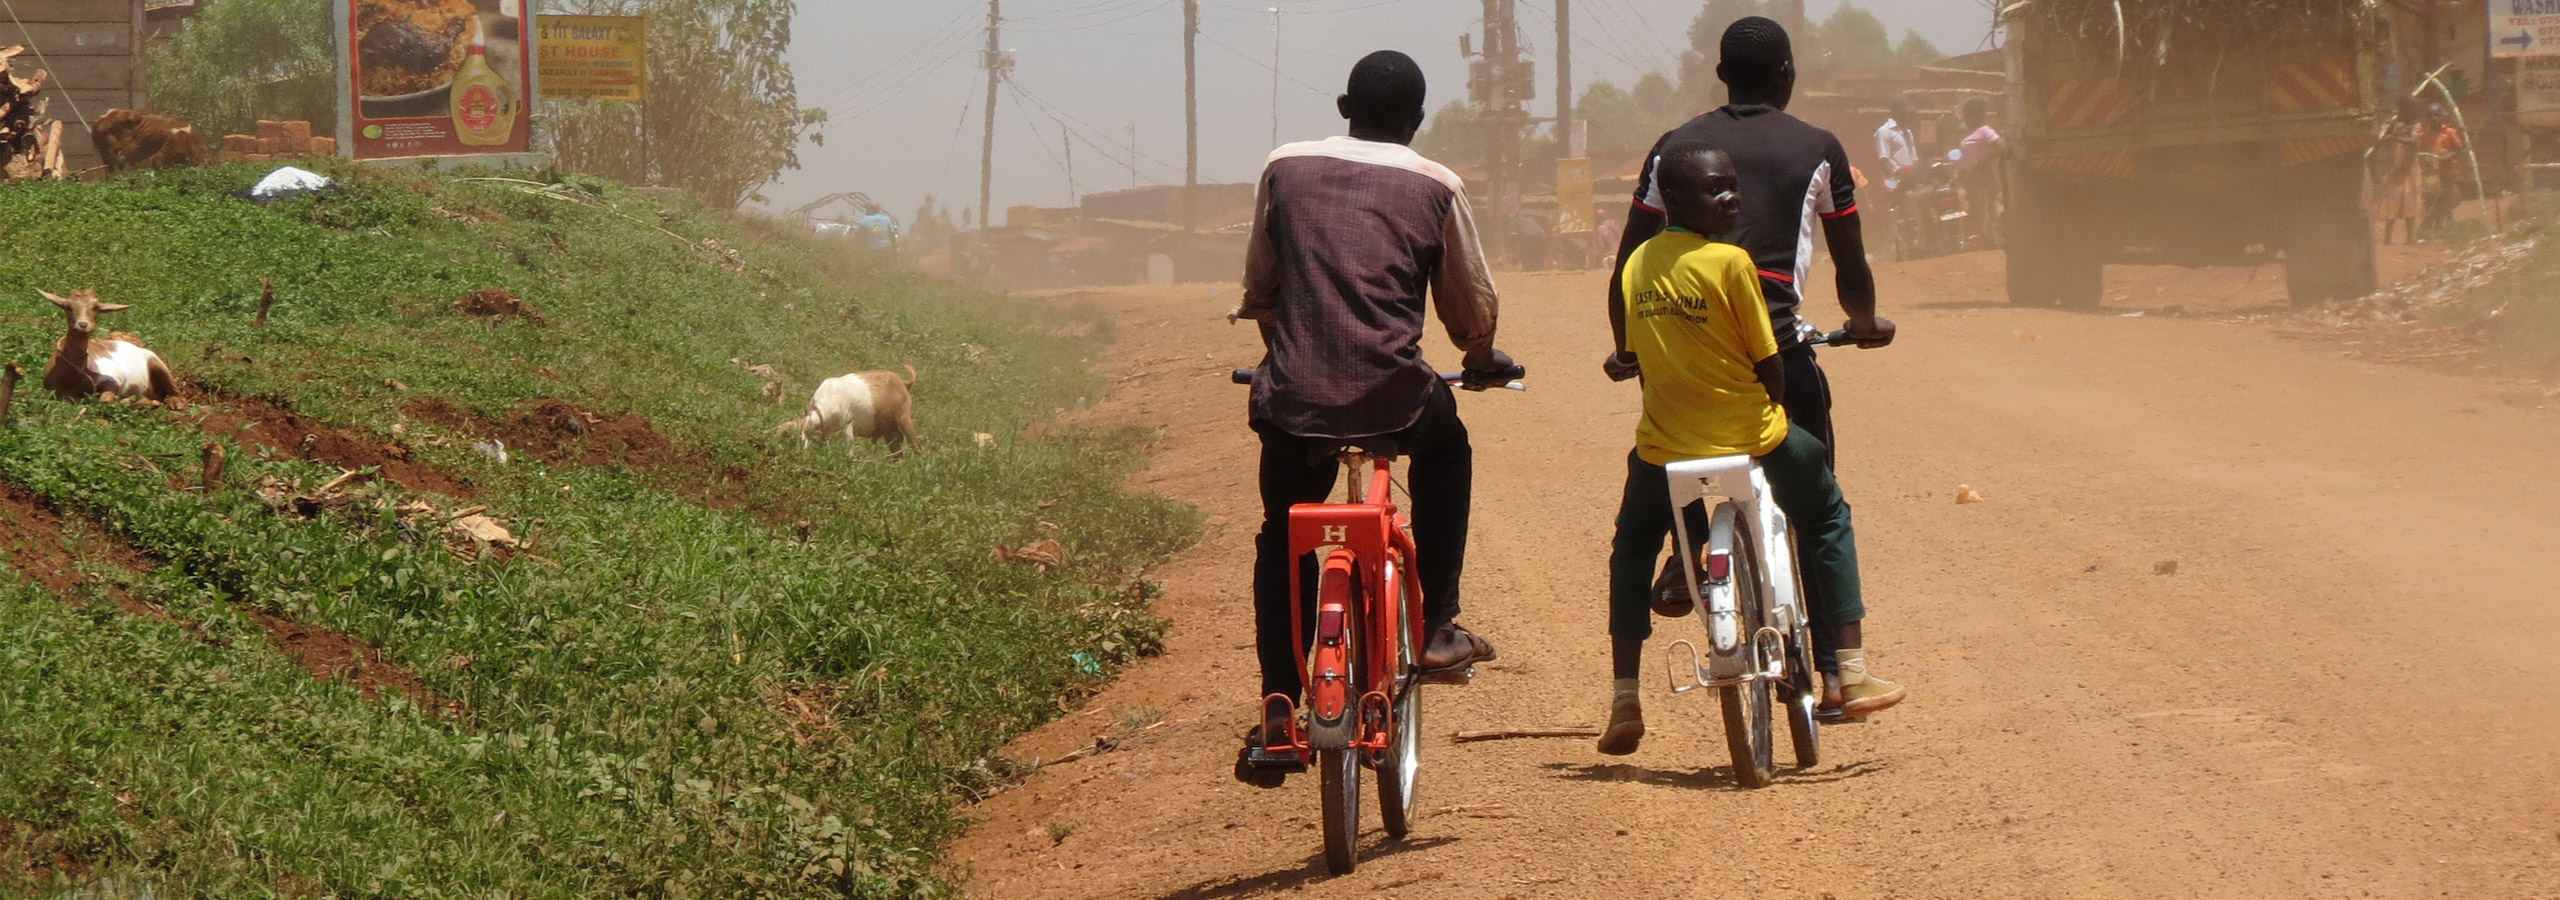 Een fiets draagt bij aan werken, gezondheid en ontwikkeling